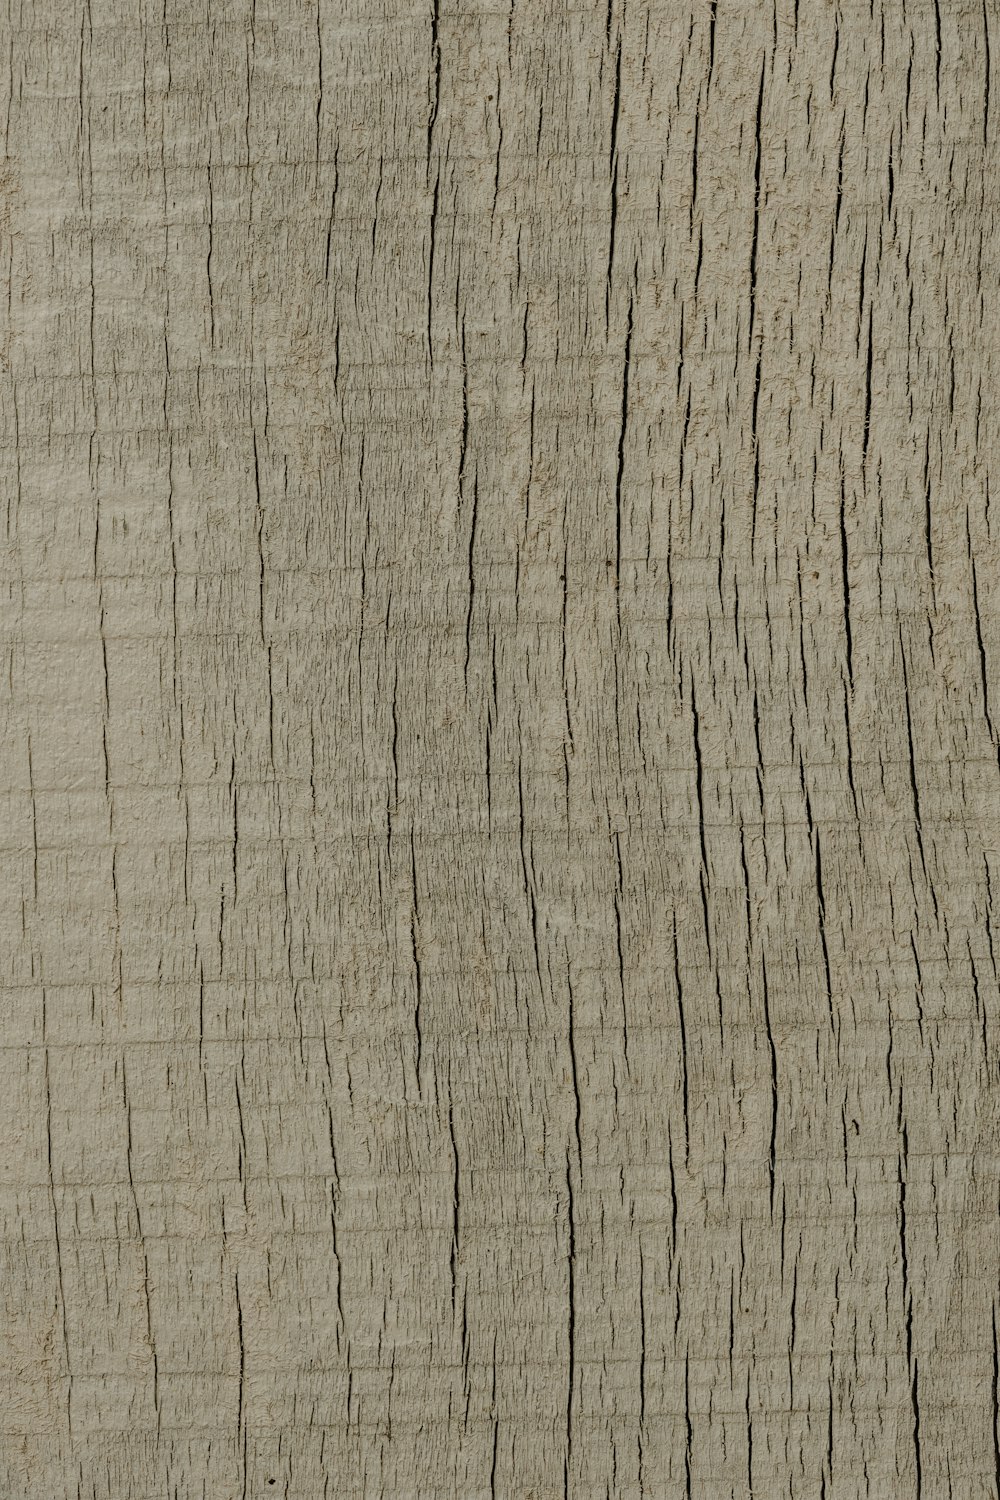 Un primer plano de un patrón de grano de madera